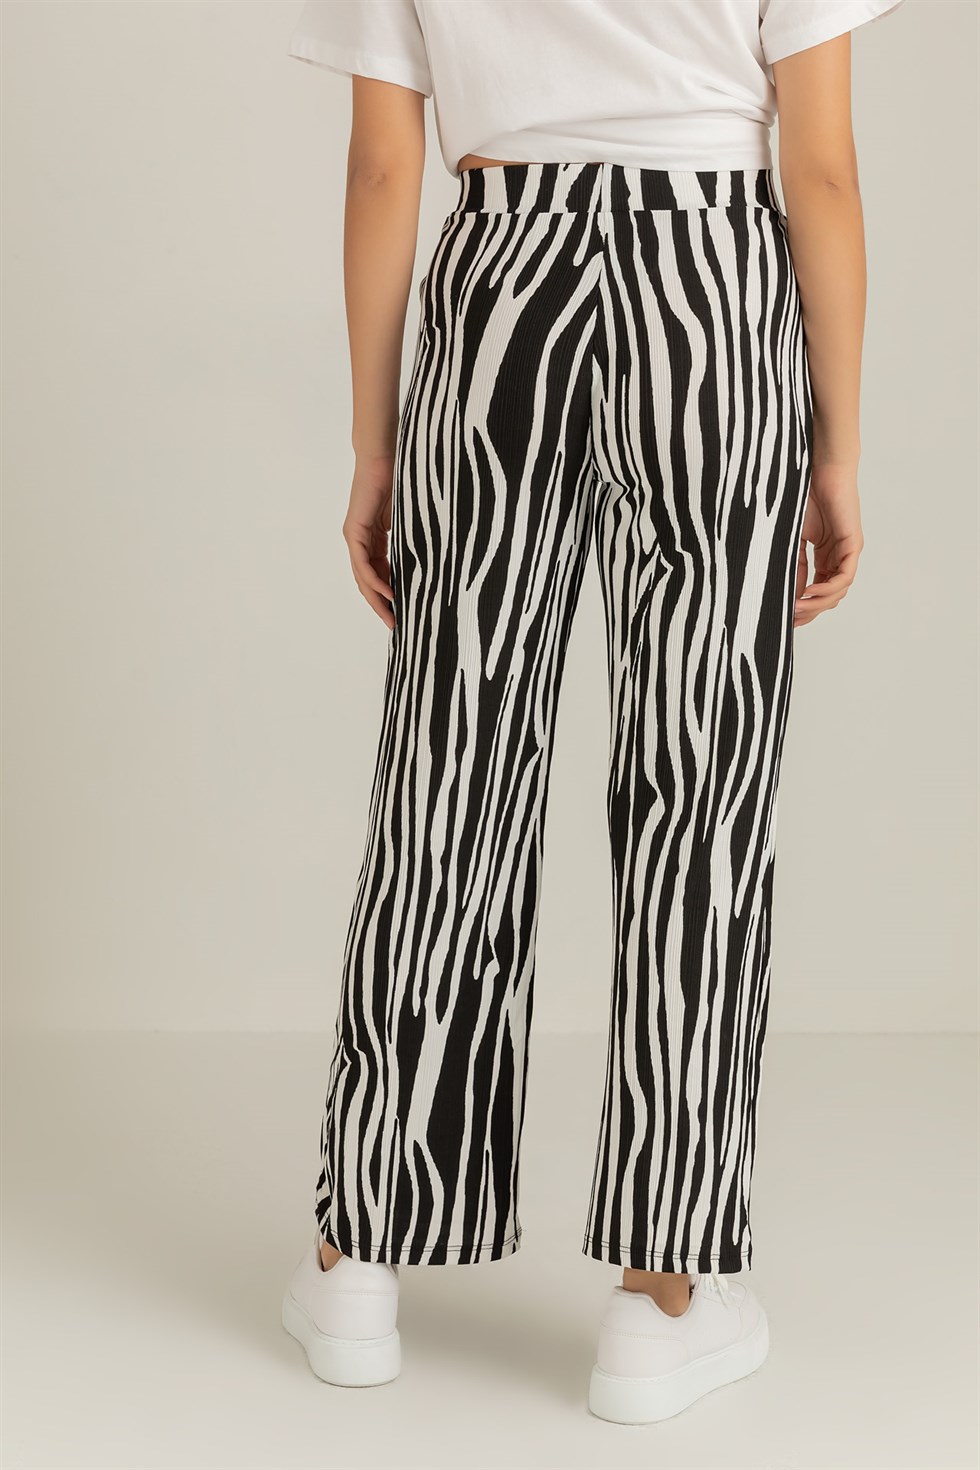 Deniz Butik Zebra Desen Likralı Pantolon - SİYAH. 4